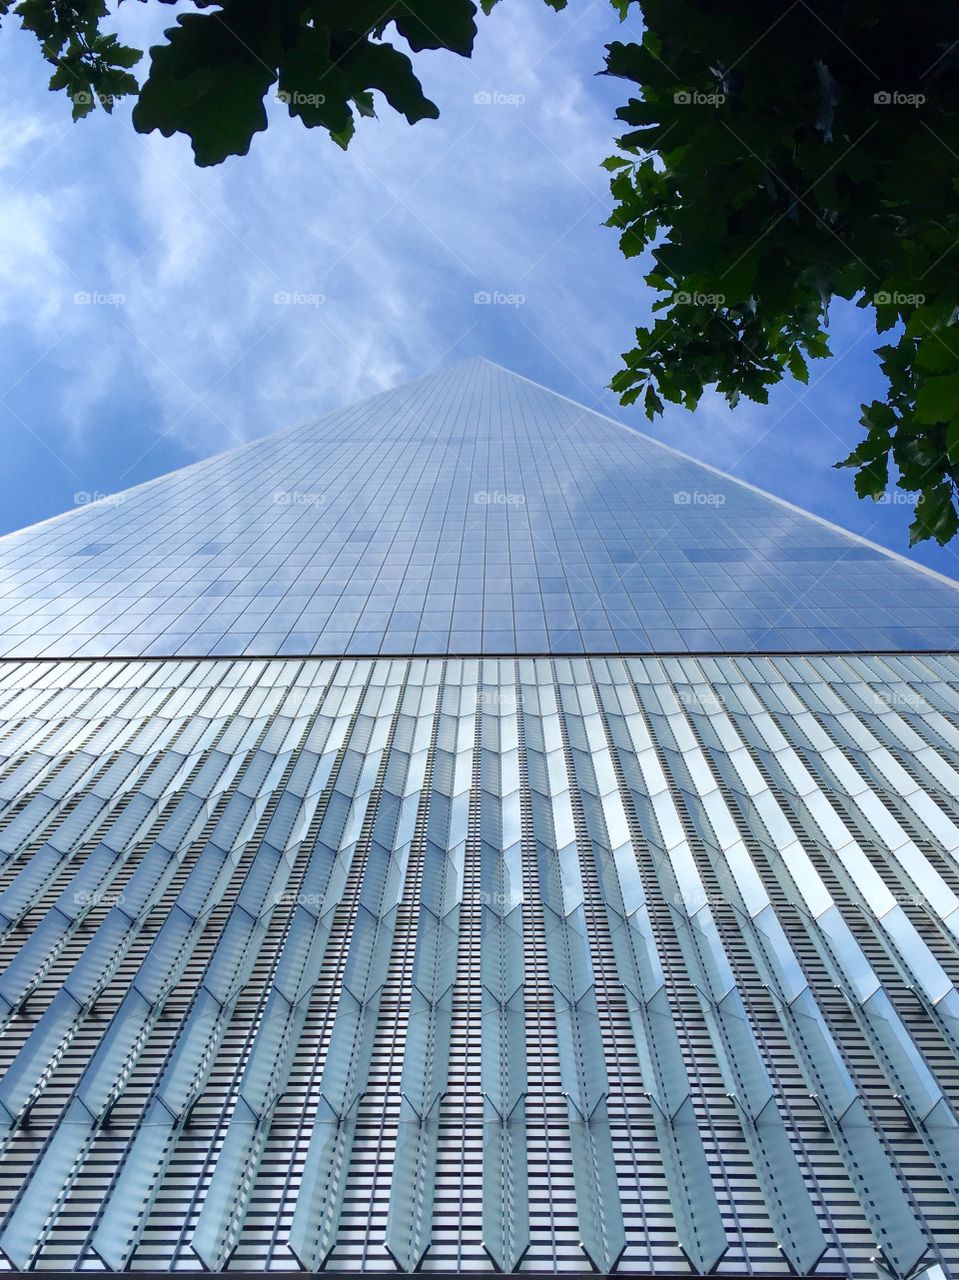 One World Trade Center. New York, NY.